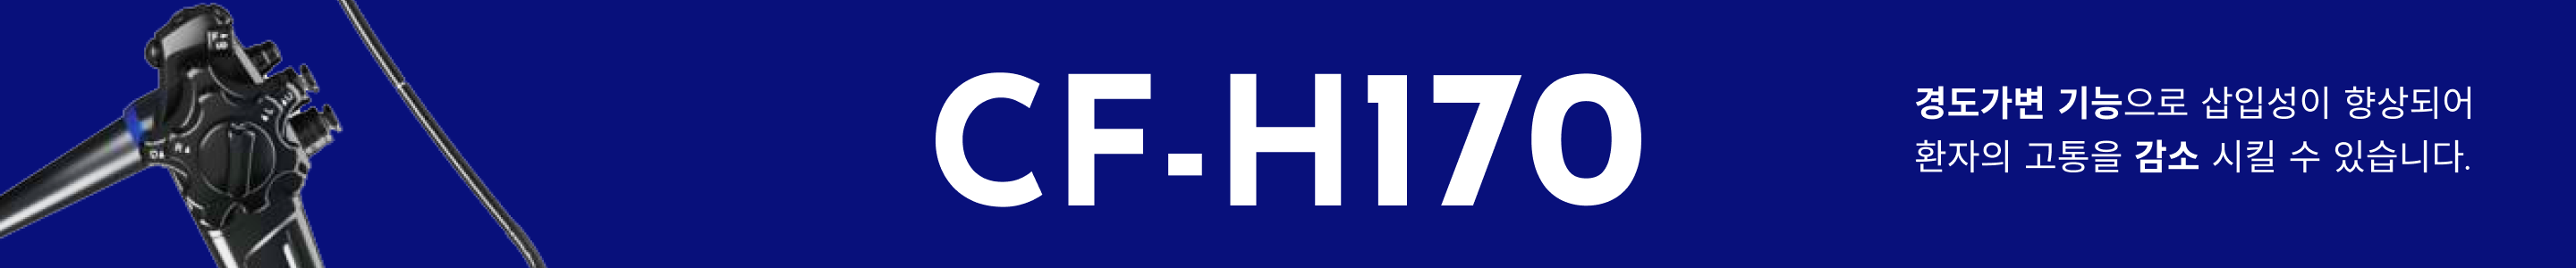 CF-H170